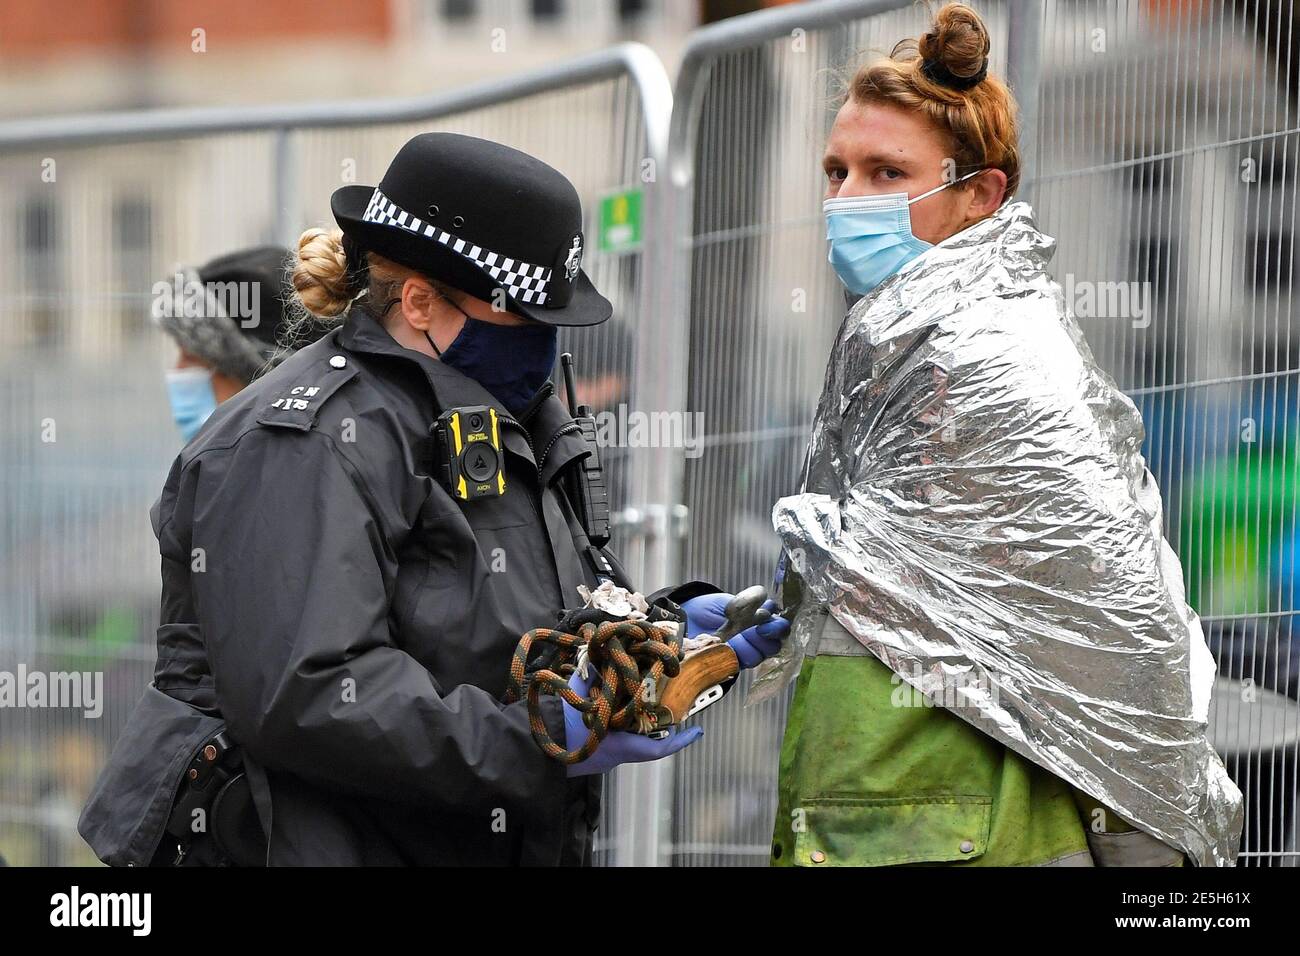 Un oficial de policía registra a un manifestante en un campamento improvisado, ya que los activistas de la rebelión de extinción ocupan túneles bajo Euston Square Gardens para protestar contra el ferrocarril de alta velocidad HS2, en Londres, Gran Bretaña, el 28 de enero de 2021. REUTERS/Toby Melville Foto de stock